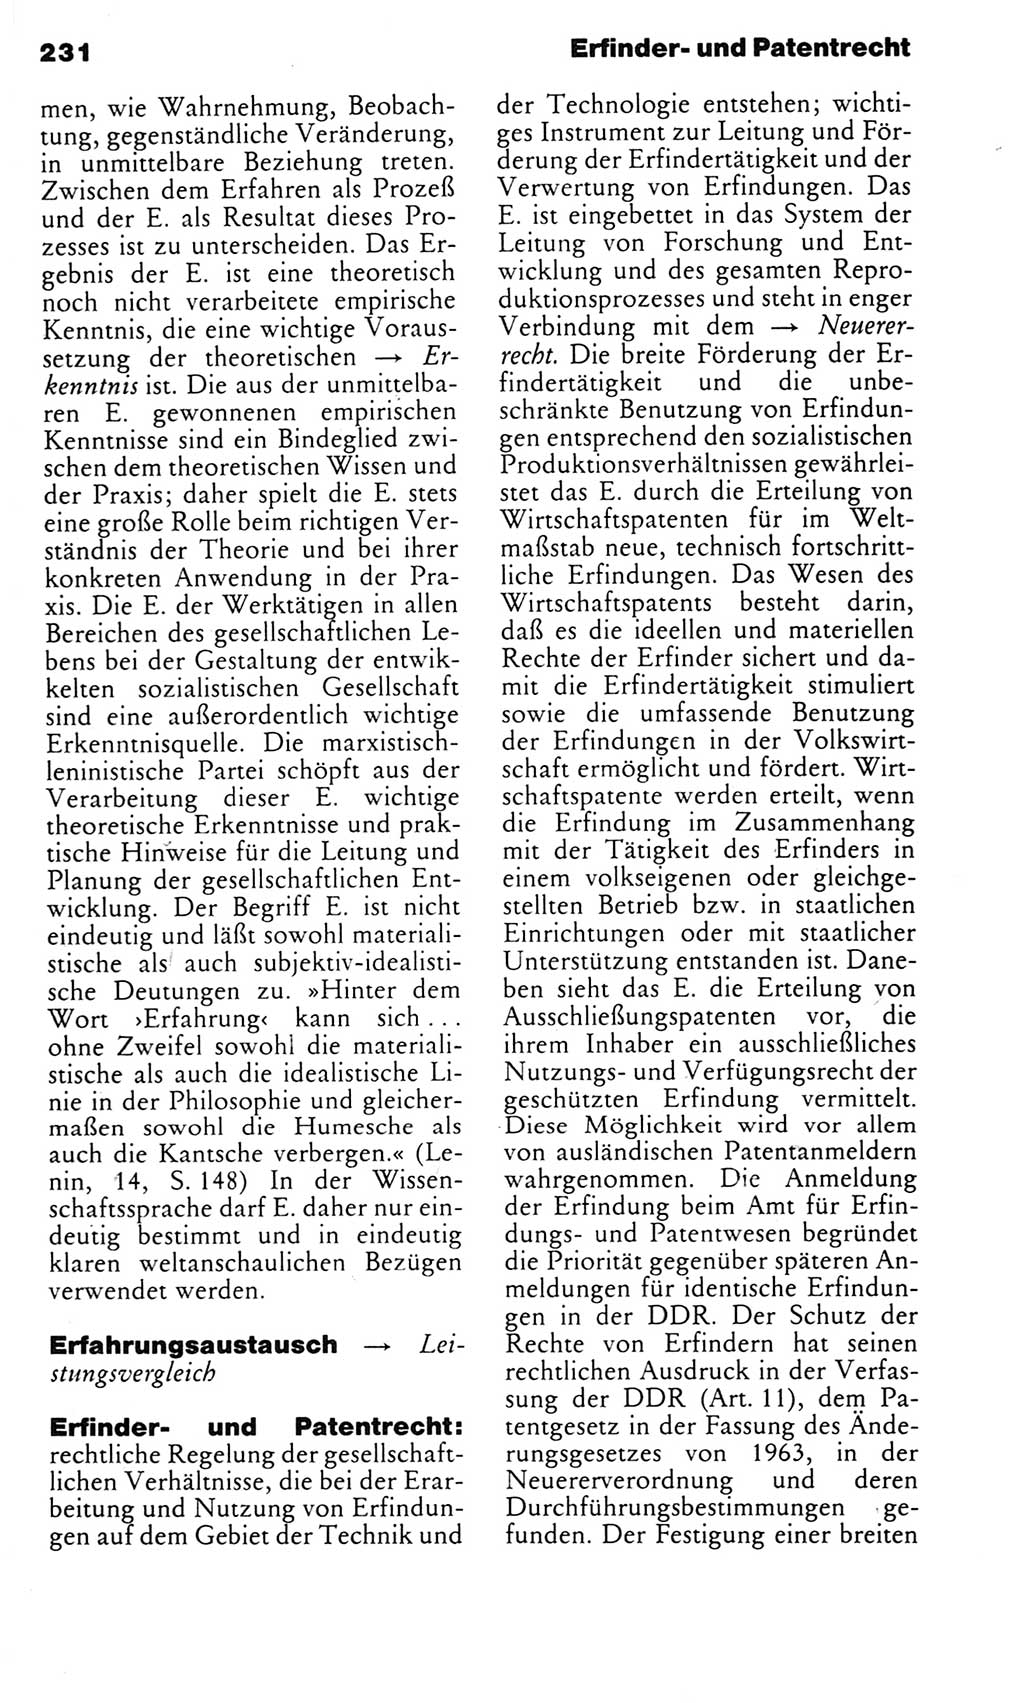 Kleines politisches Wörterbuch [Deutsche Demokratische Republik (DDR)] 1983, Seite 231 (Kl. pol. Wb. DDR 1983, S. 231)